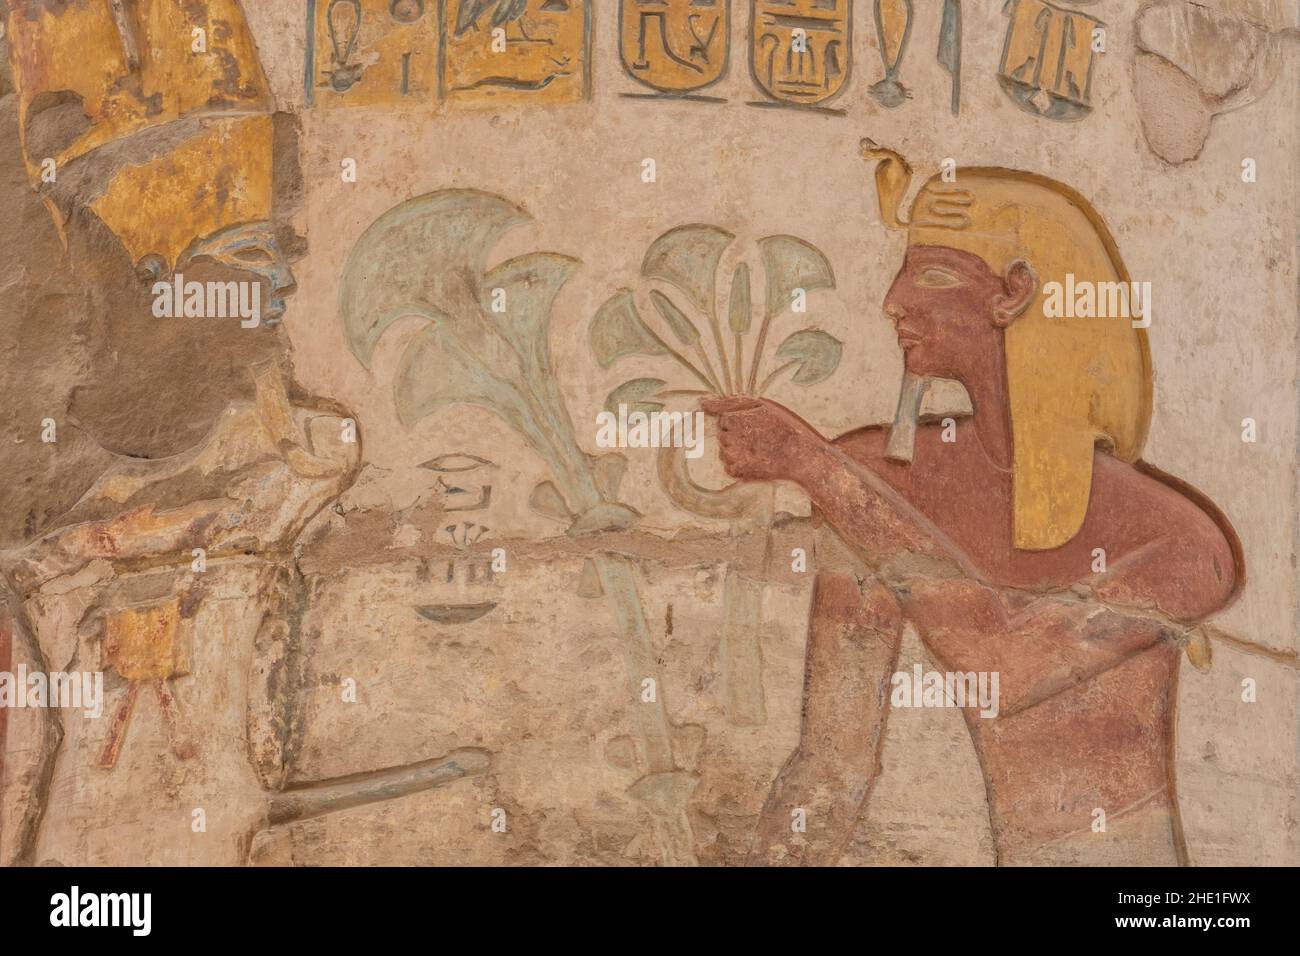 Alte ägyptische Reliefskulpturen, die gut erhalten geblieben sind und auf die Säulen in der Hypostyle-Halle in Karnak, Ägypten, gemalt wurden. Stockfoto